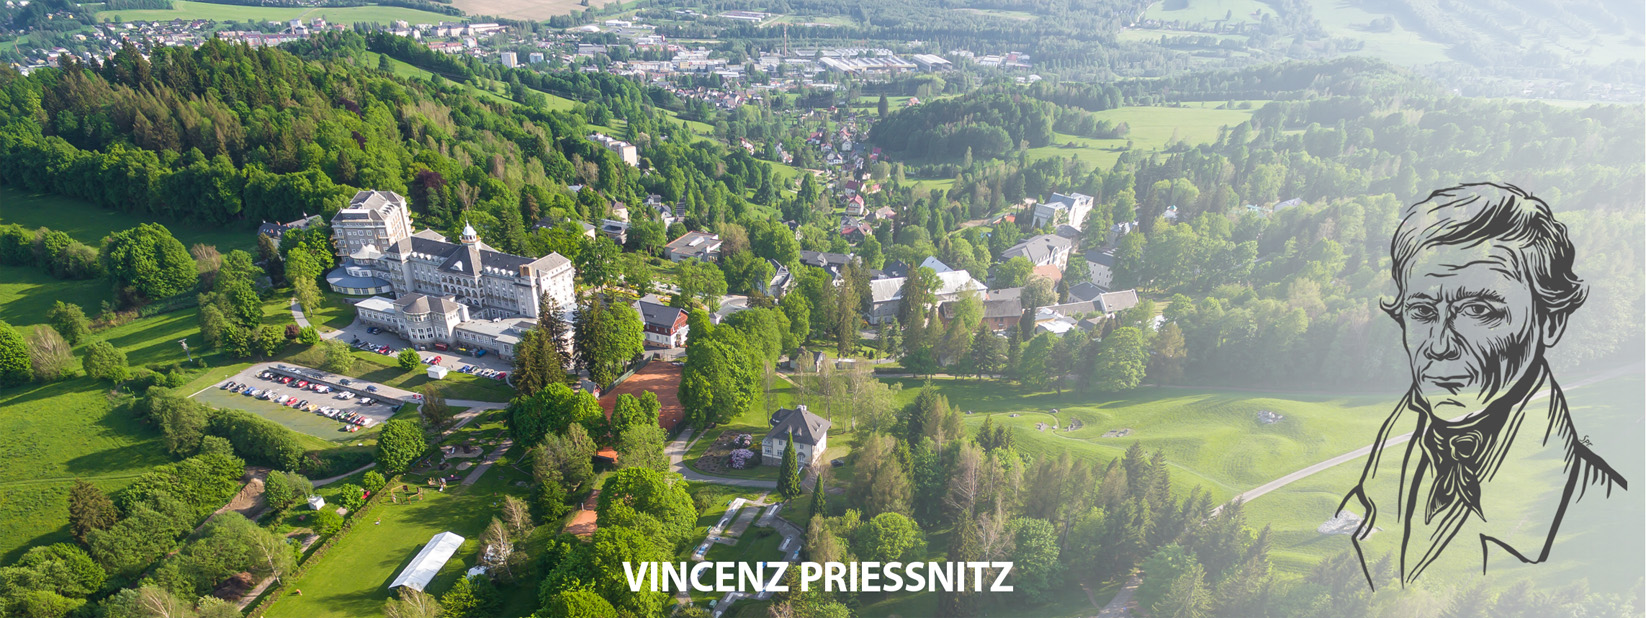 Vincenz Priessnitz